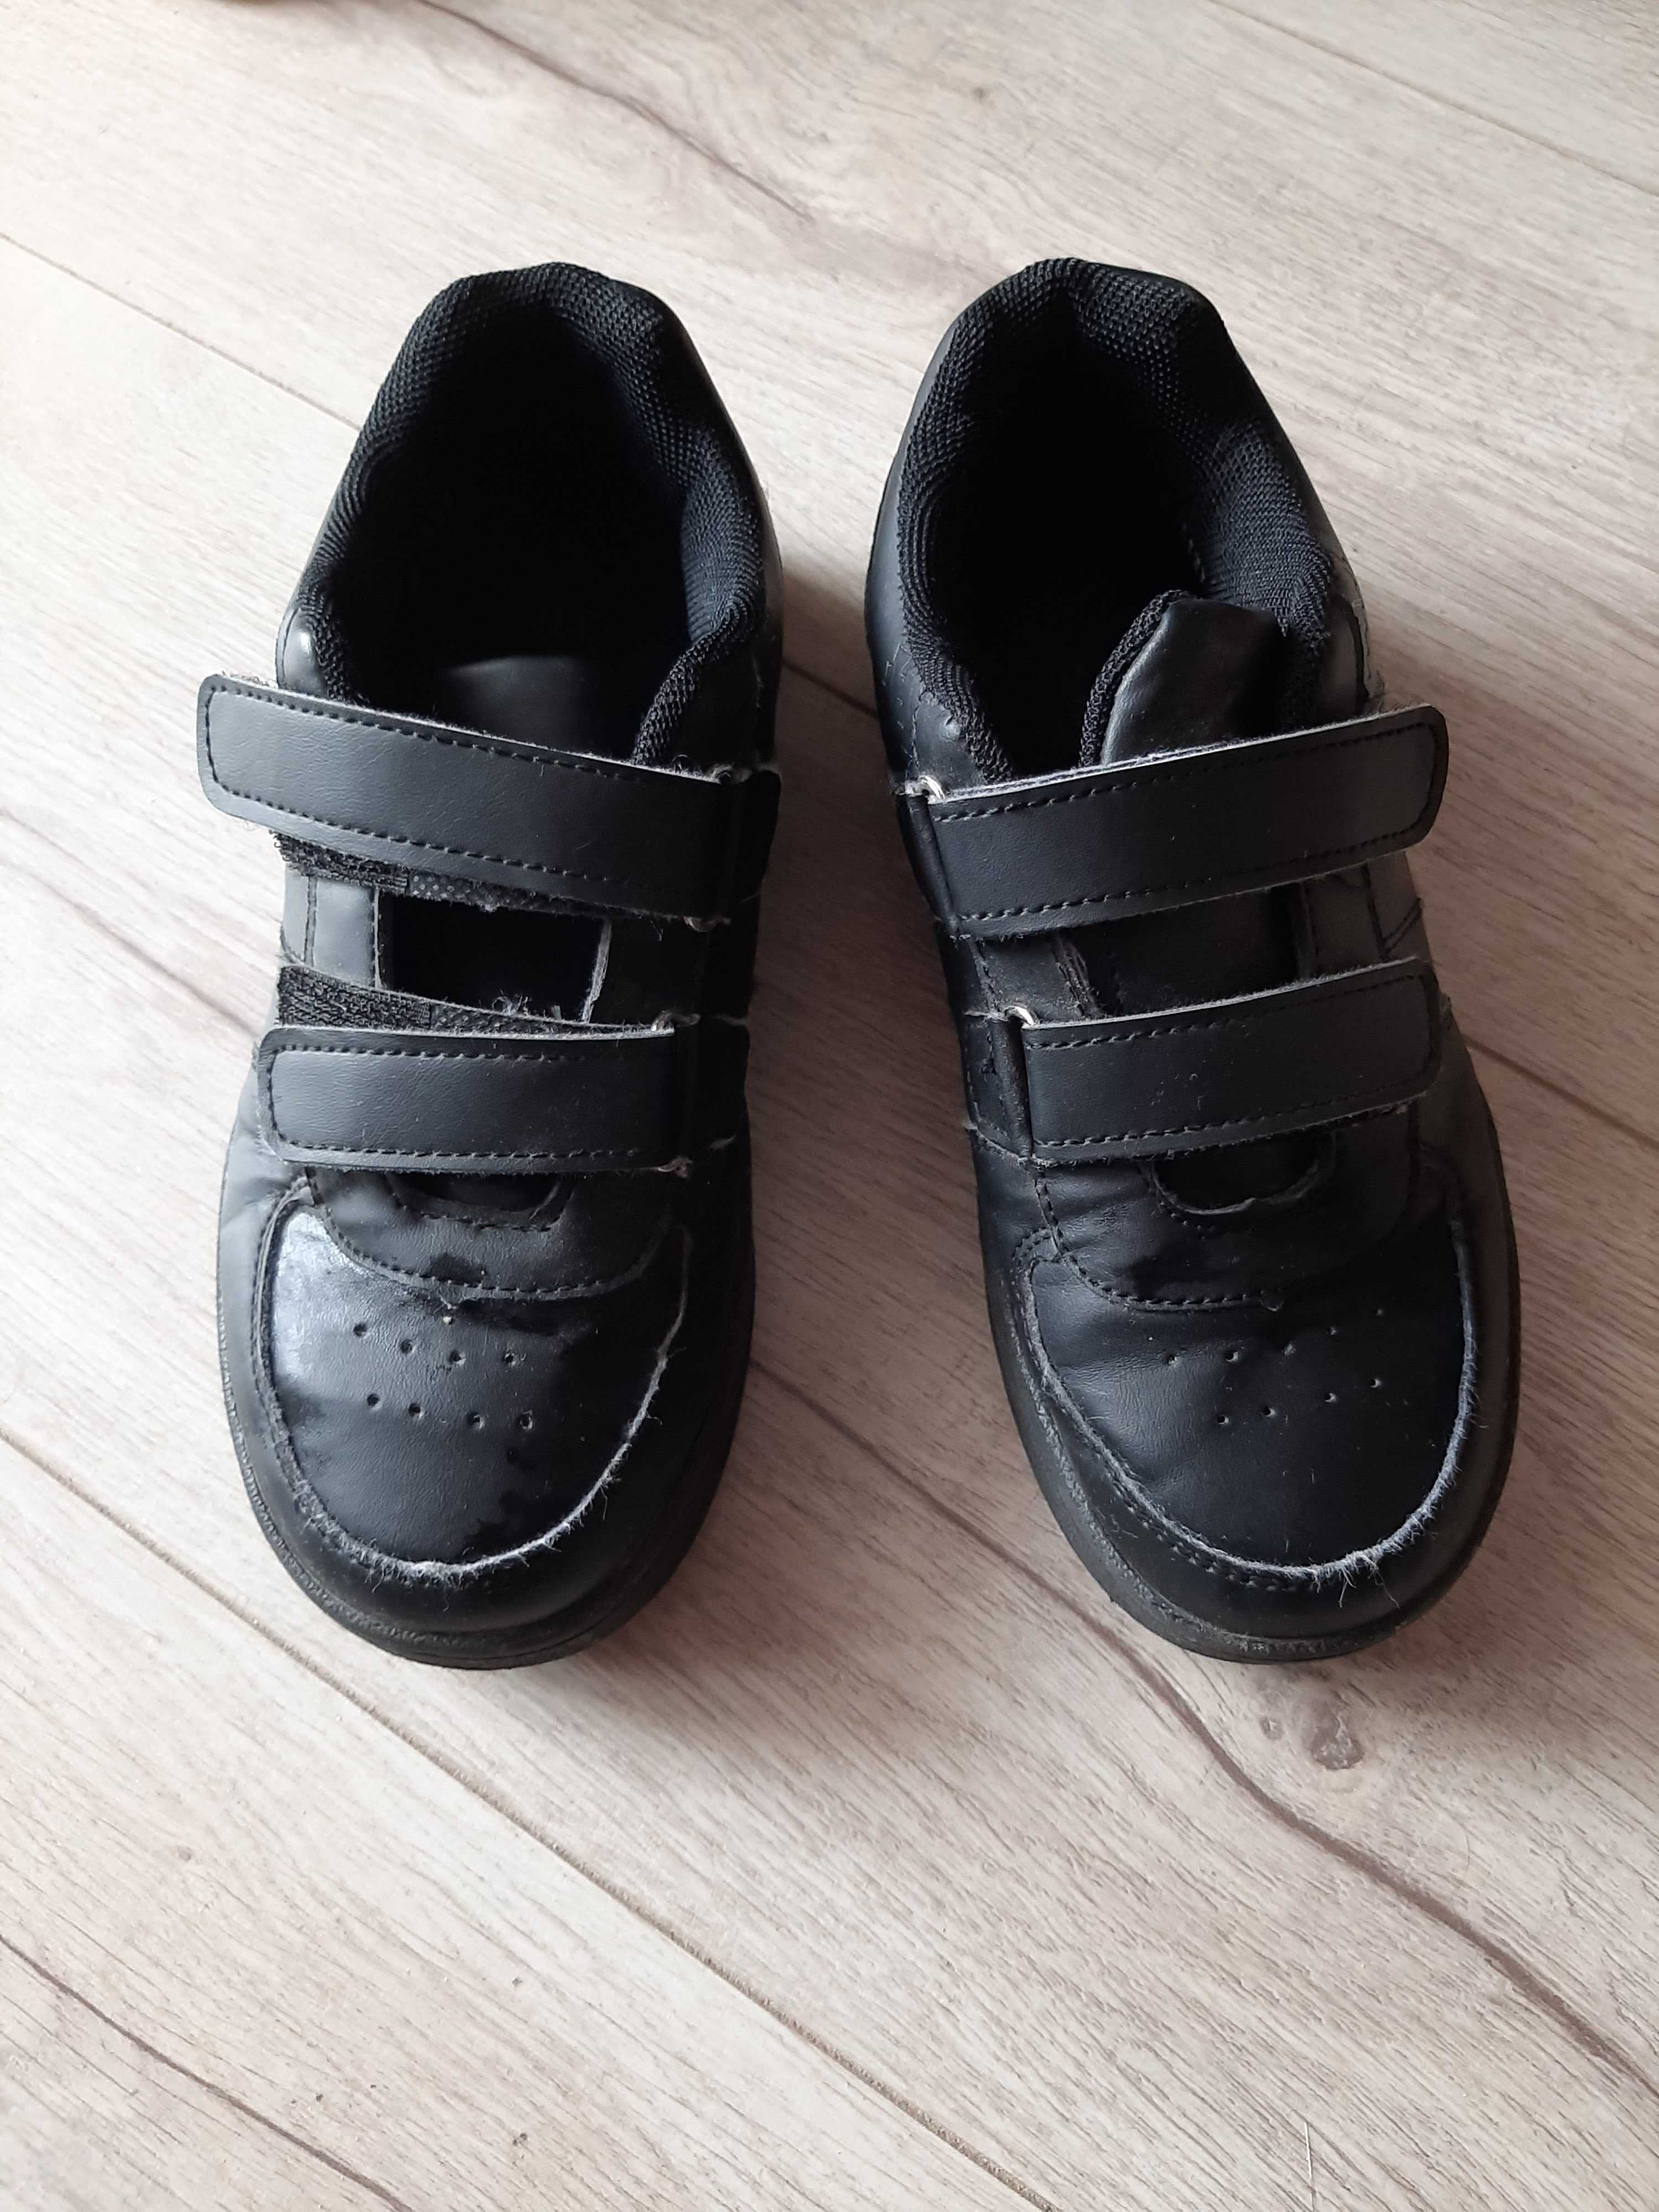 Czarne chłopięce buty na rzepy r.33 wkładka ok 19,5-20cm